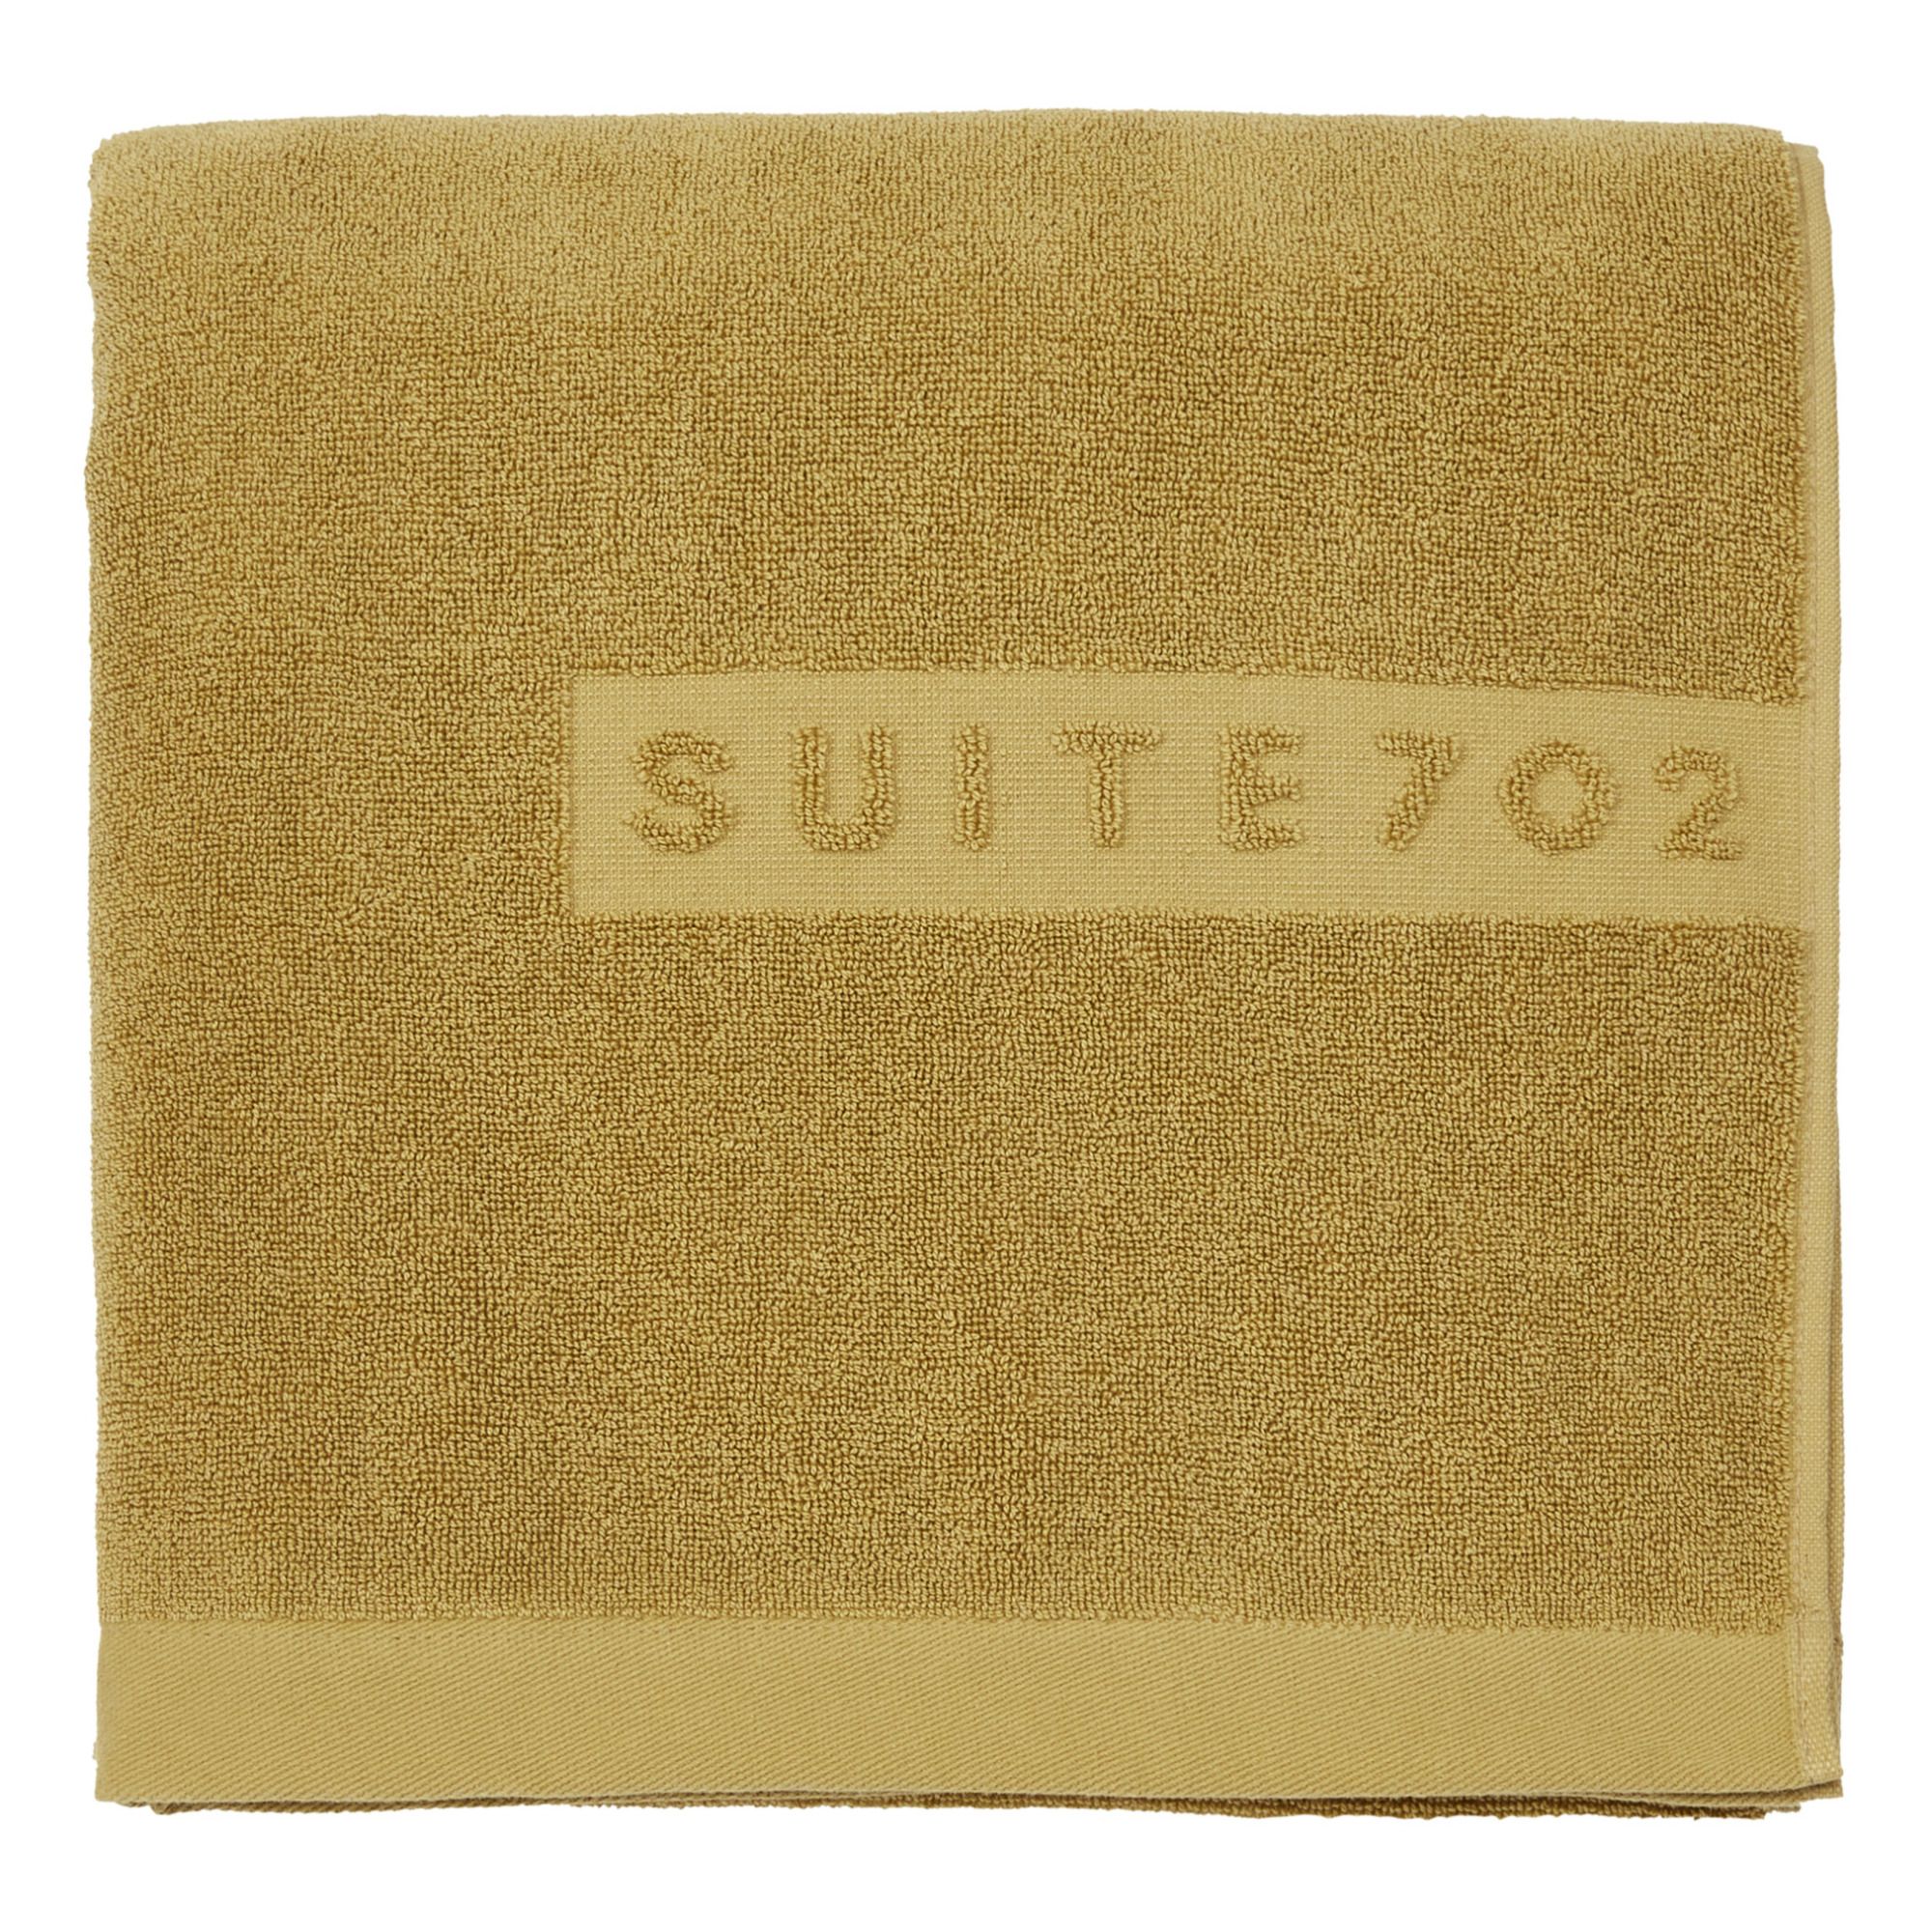 Suite 702 - Drap de bain en coton bio - Miel